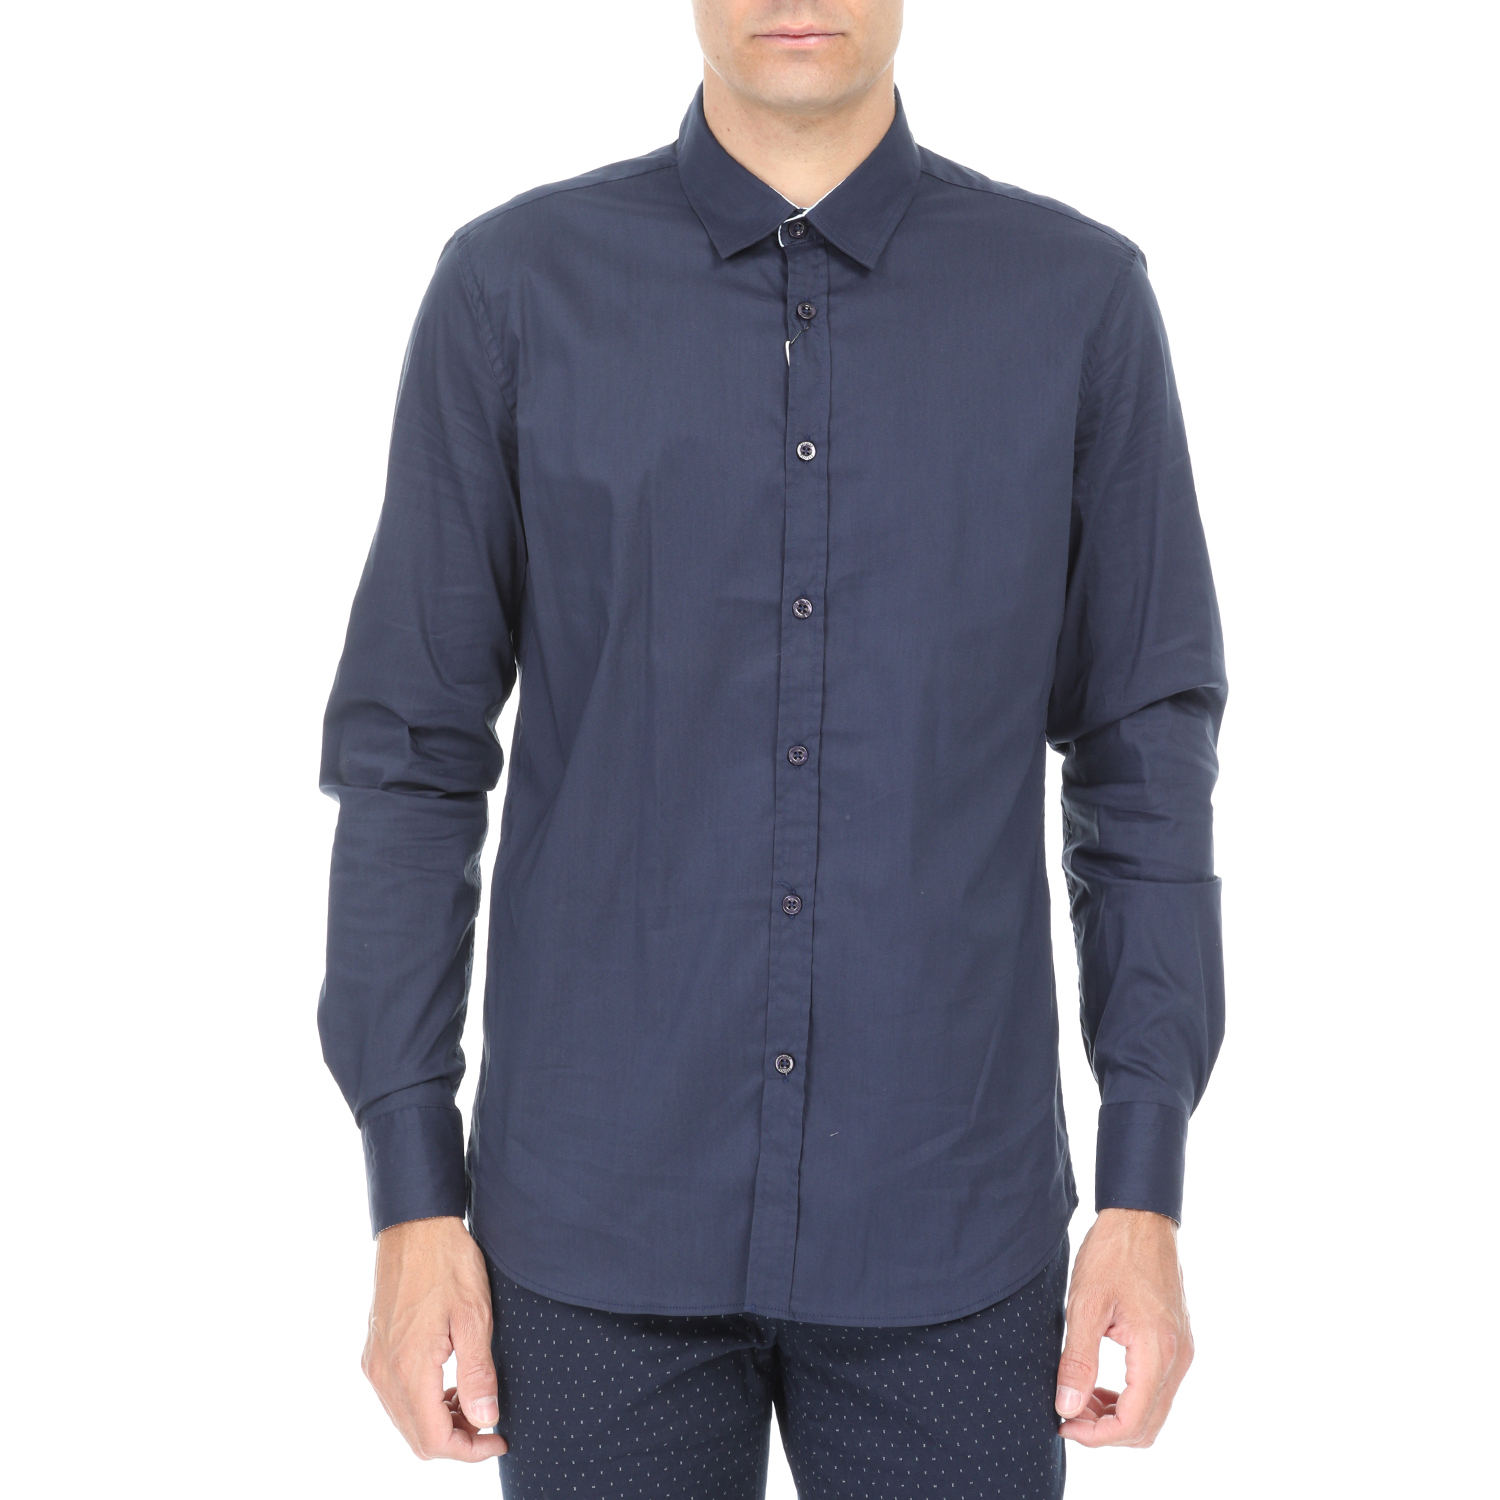 Ανδρικά/Ρούχα/Πουκάμισα/Μακρυμάνικα SSEINSE - Ανδρικό πουκάμισο SSEINSE μπλε